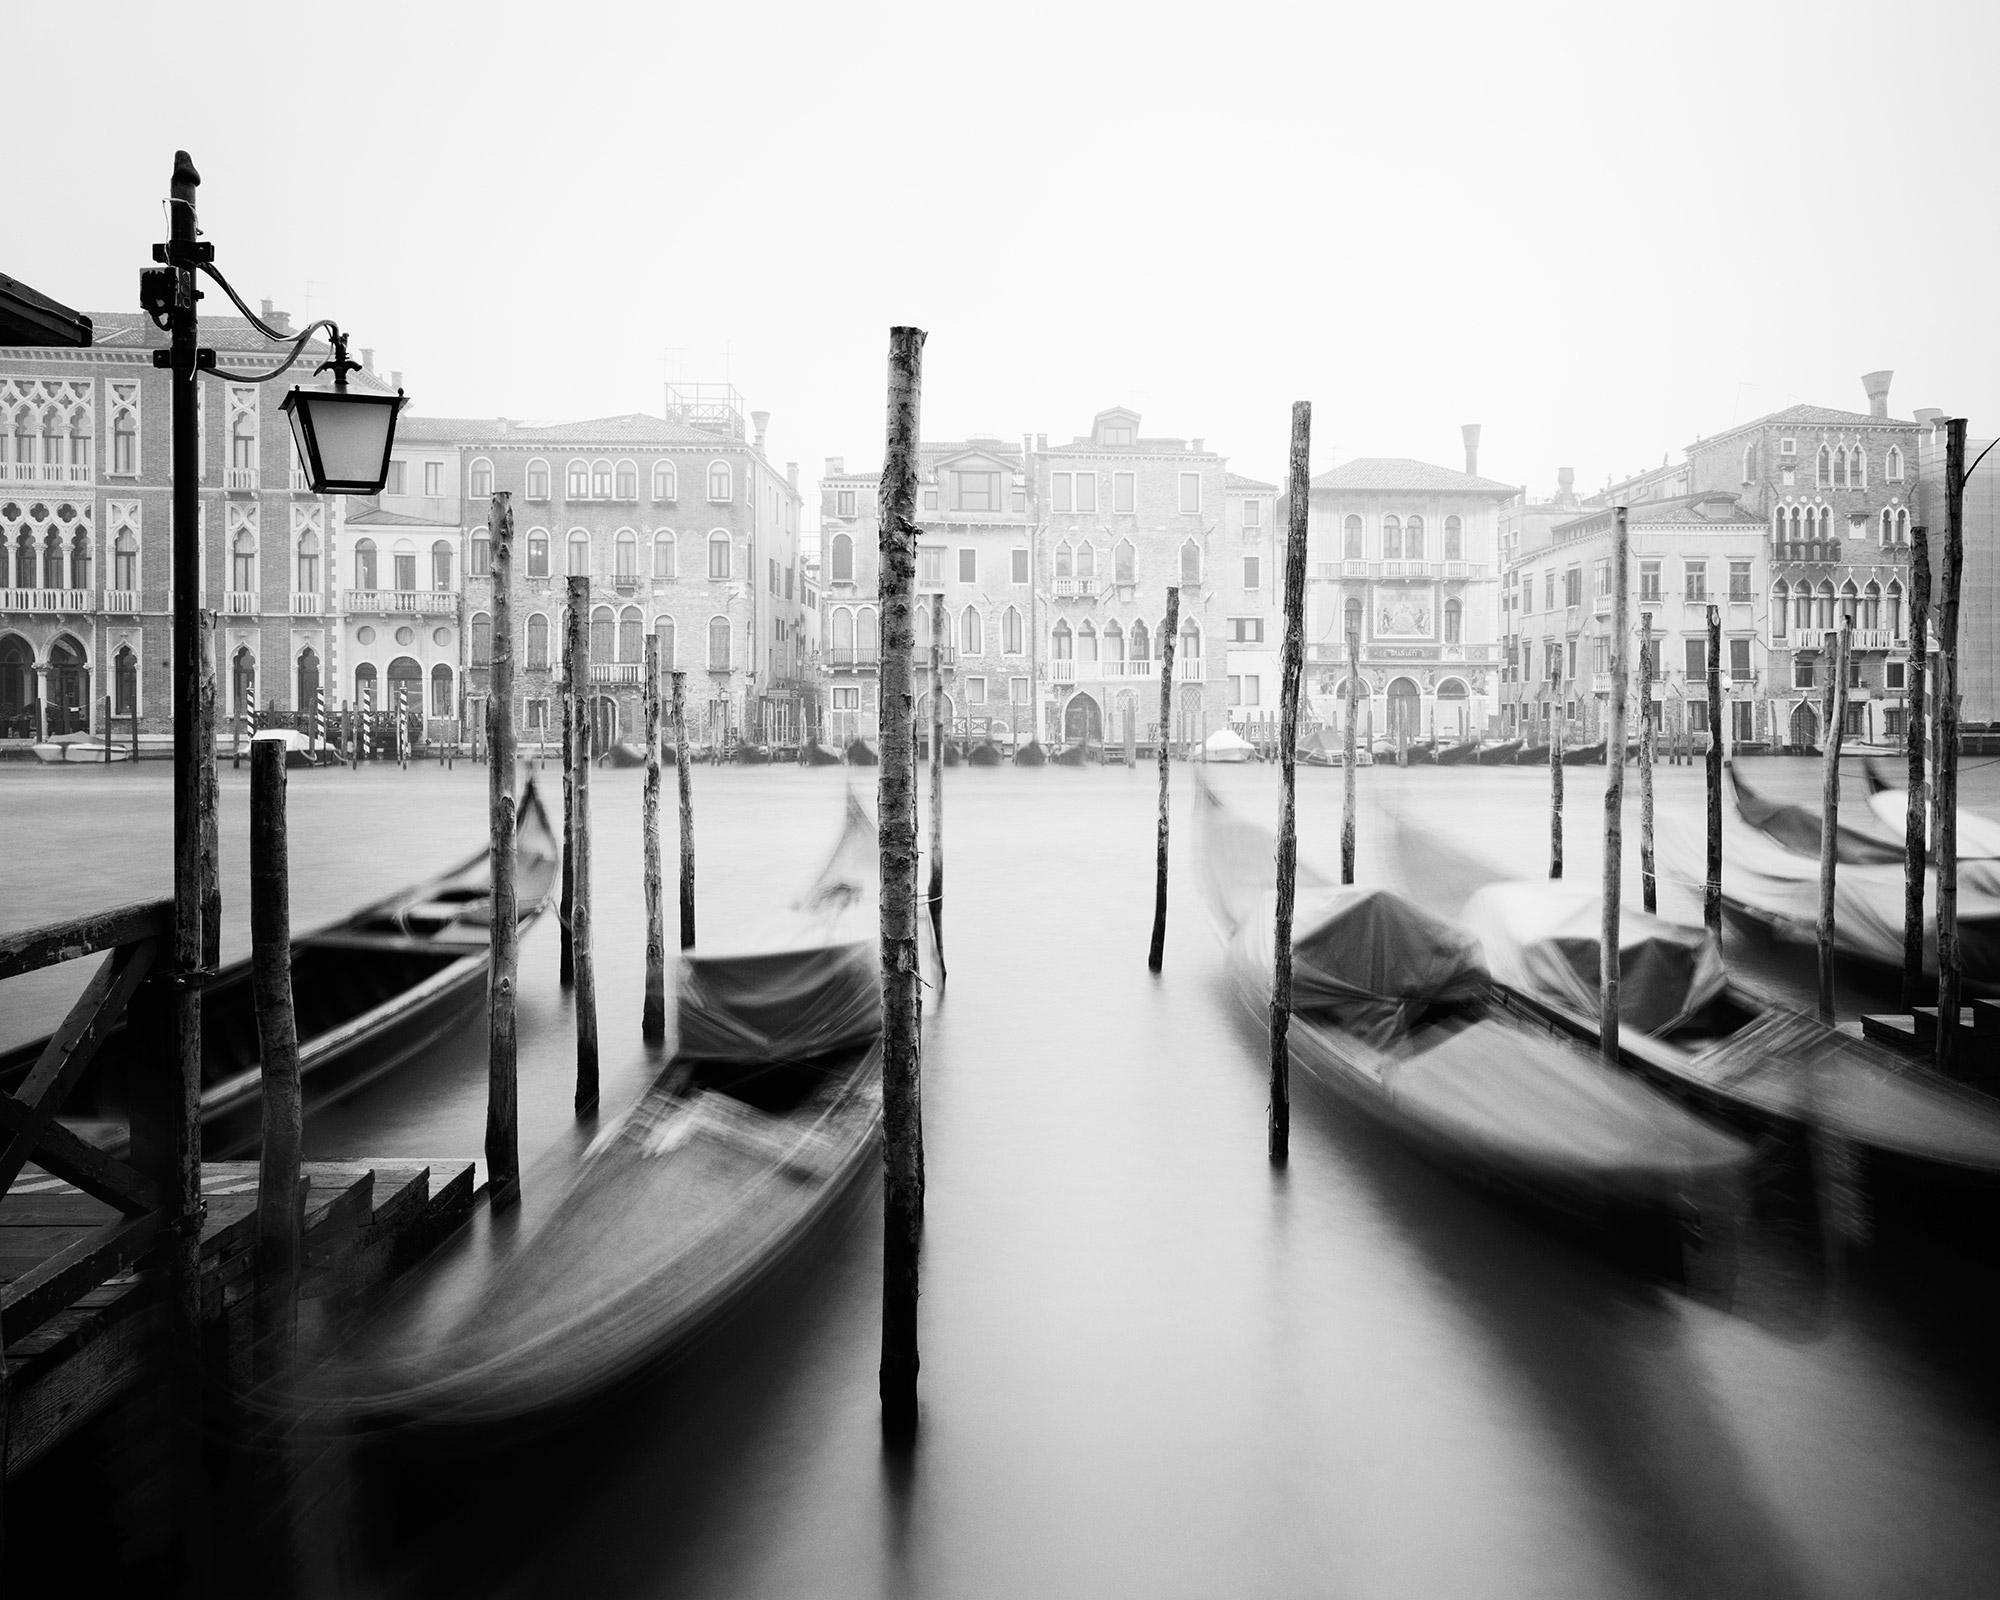 Gondola, Canal Grande, Venedig, Schwarz-Weiß-Fotografie von Stadtansichten der bildenden Kunst